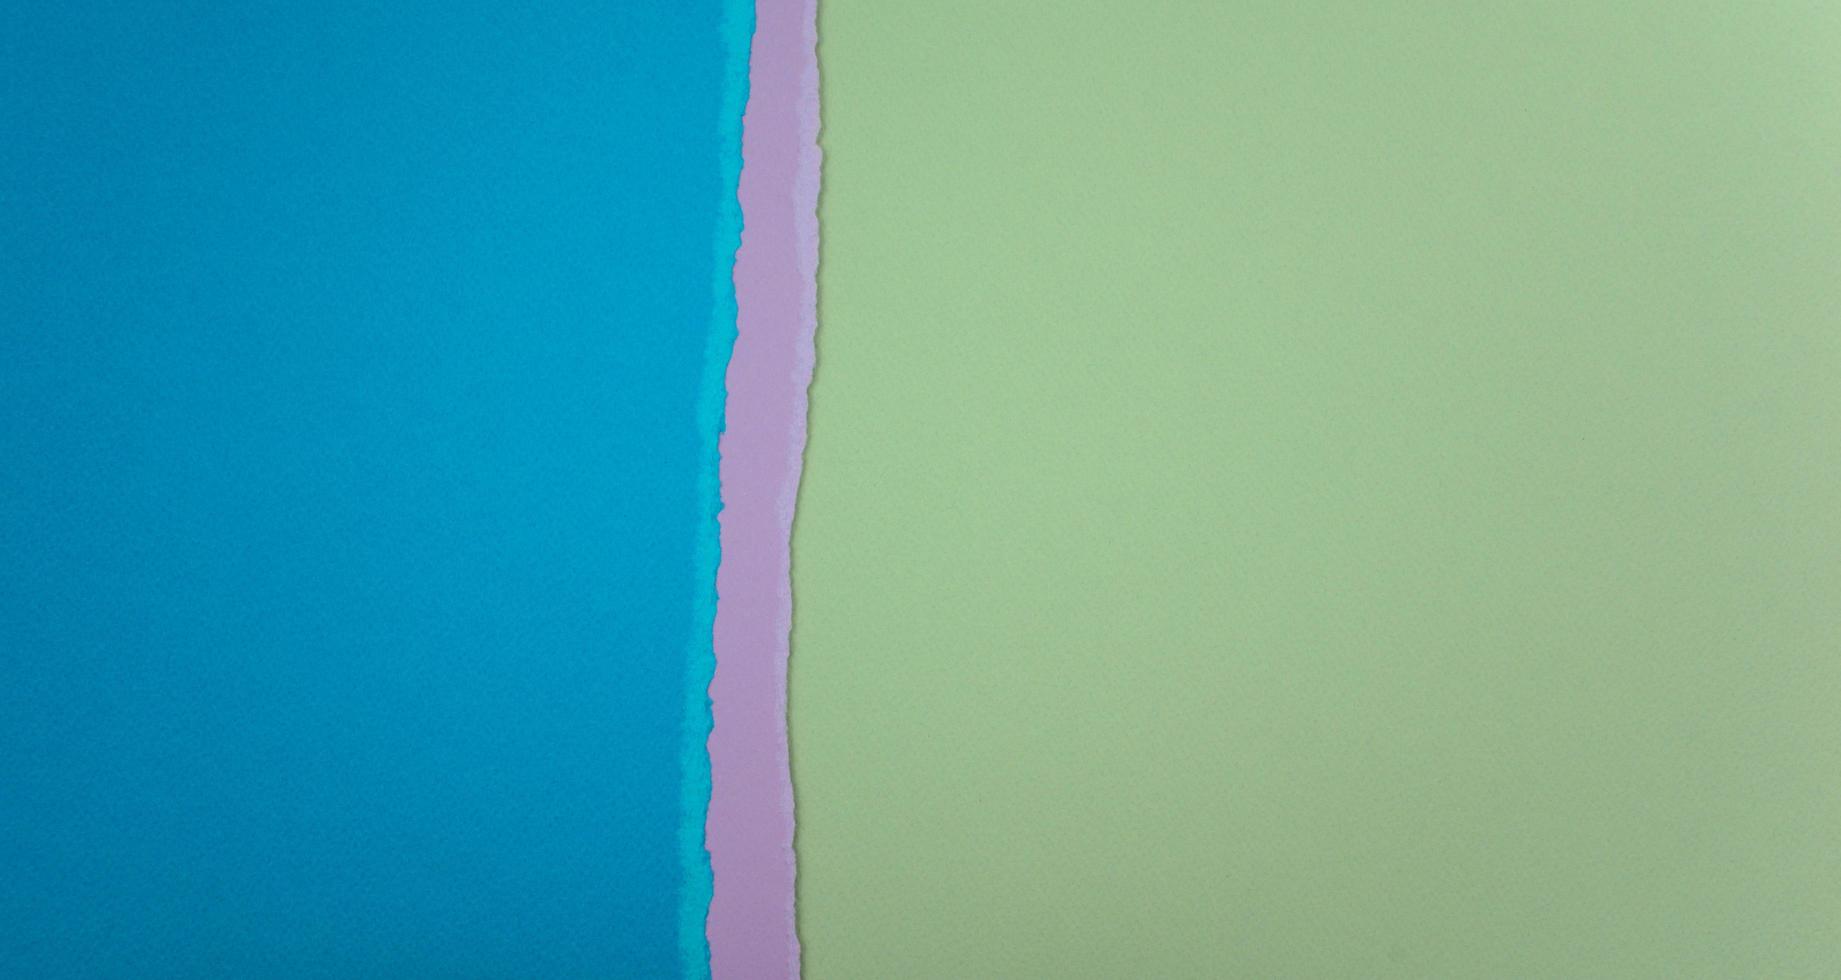 Fond de texture abstraite de papiers déchirés de couleur bleue, violette et verte photo